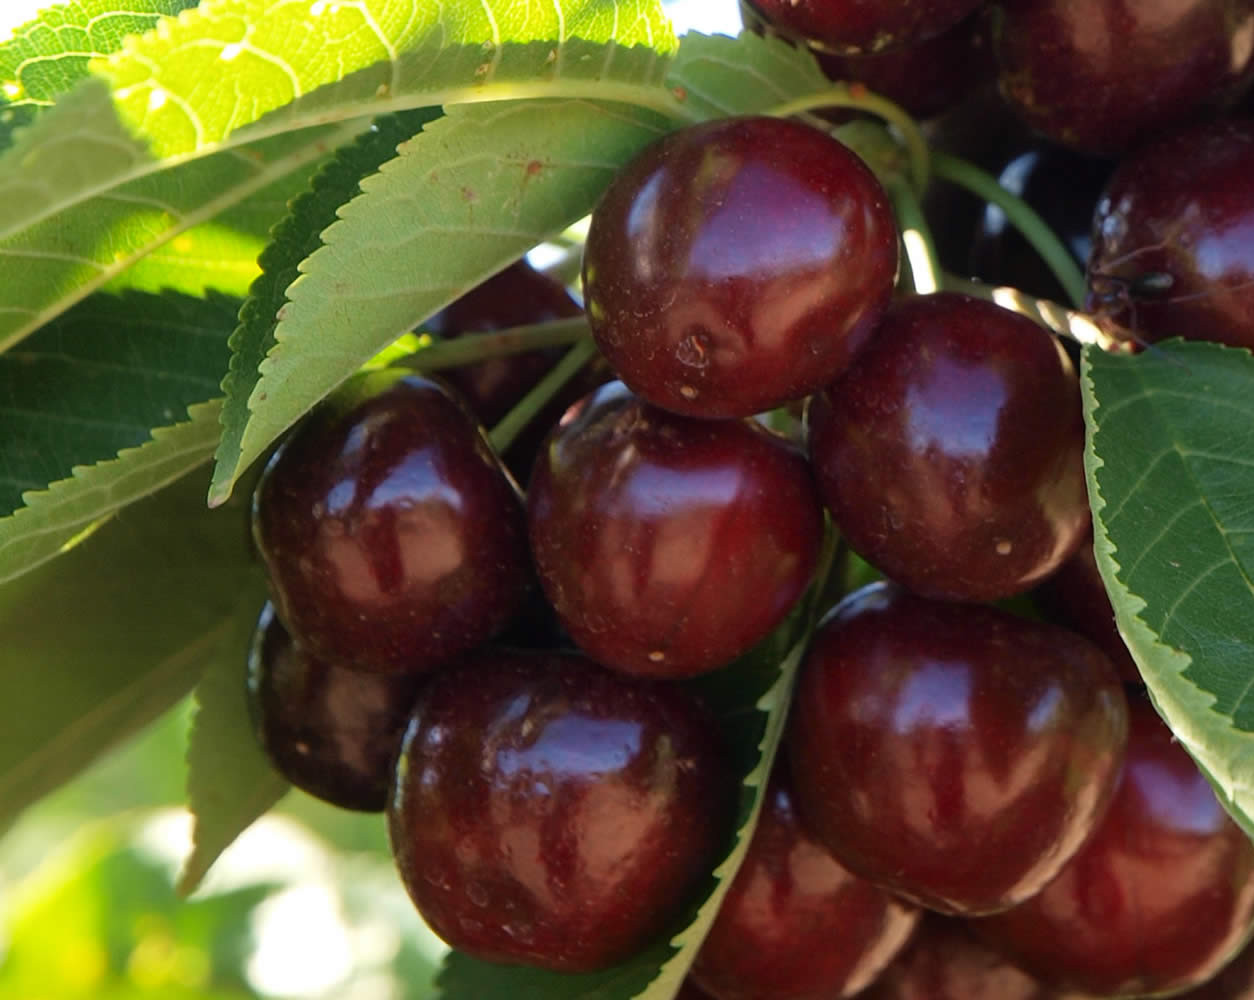 Cherry Growers Australia riporta l'export a +43% a fine stagione, anche grazie alla partnership con l'India